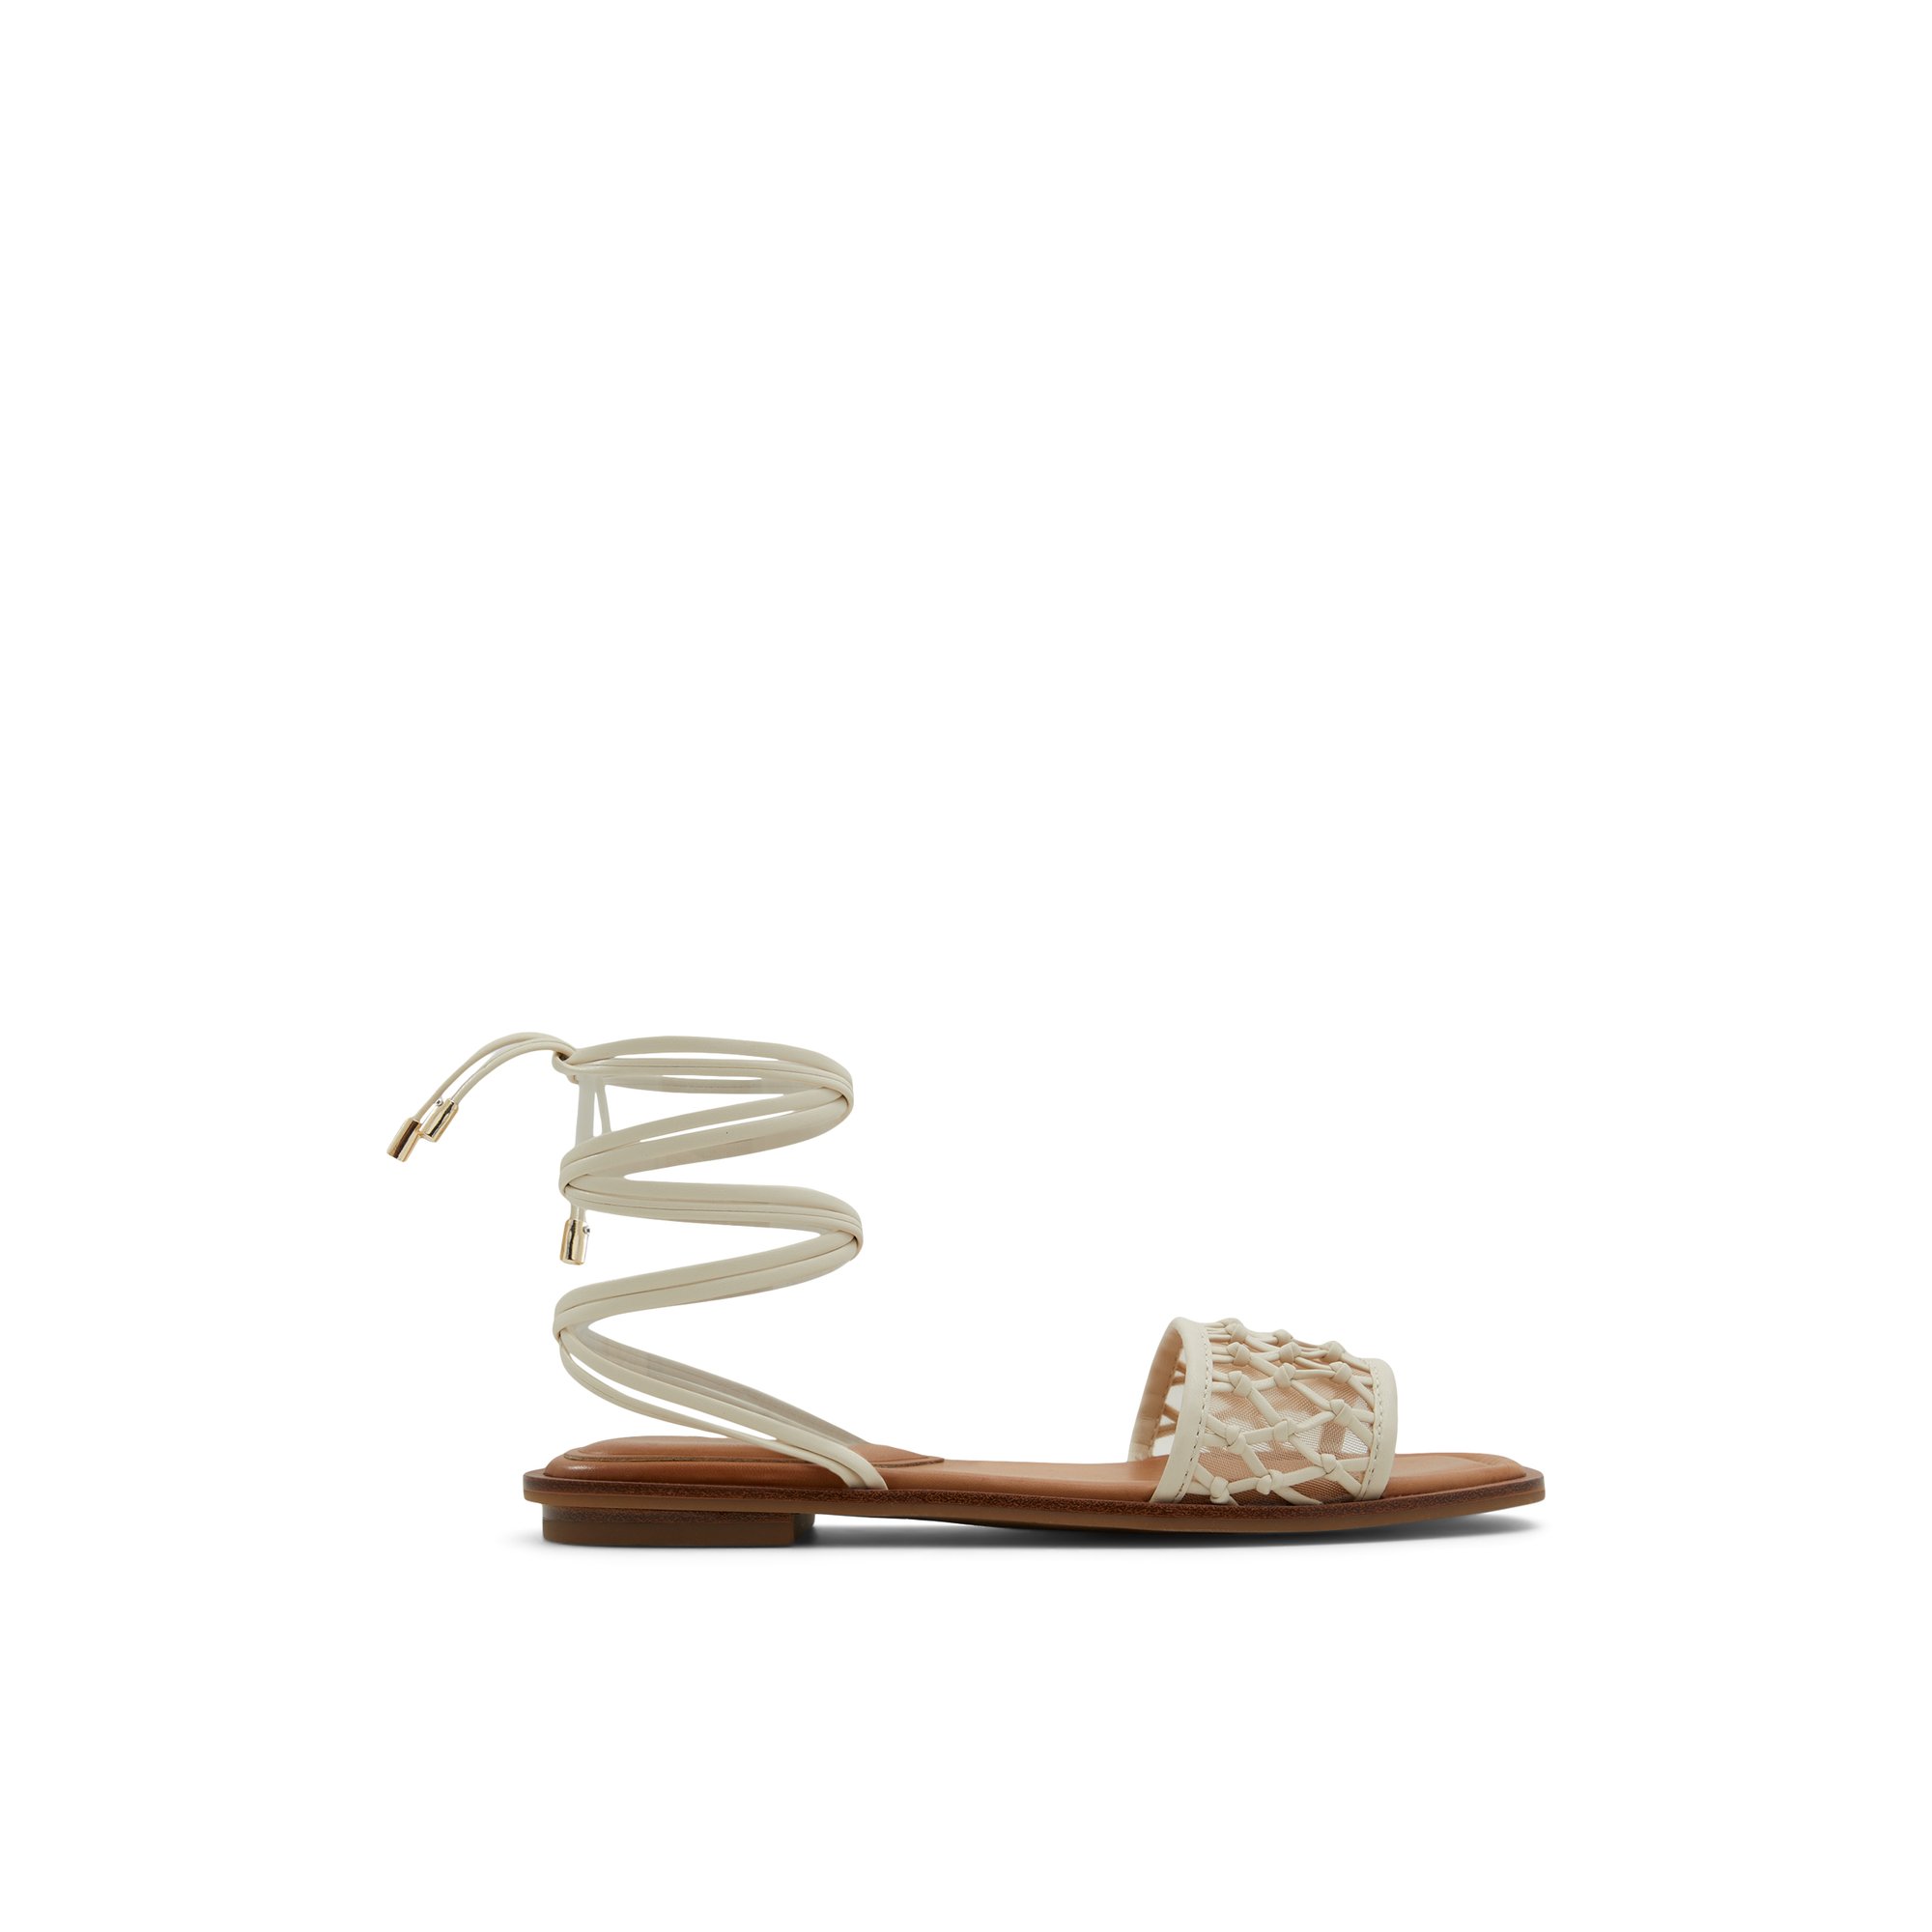 ALDO Seazen - Women's Flat Sandals - White